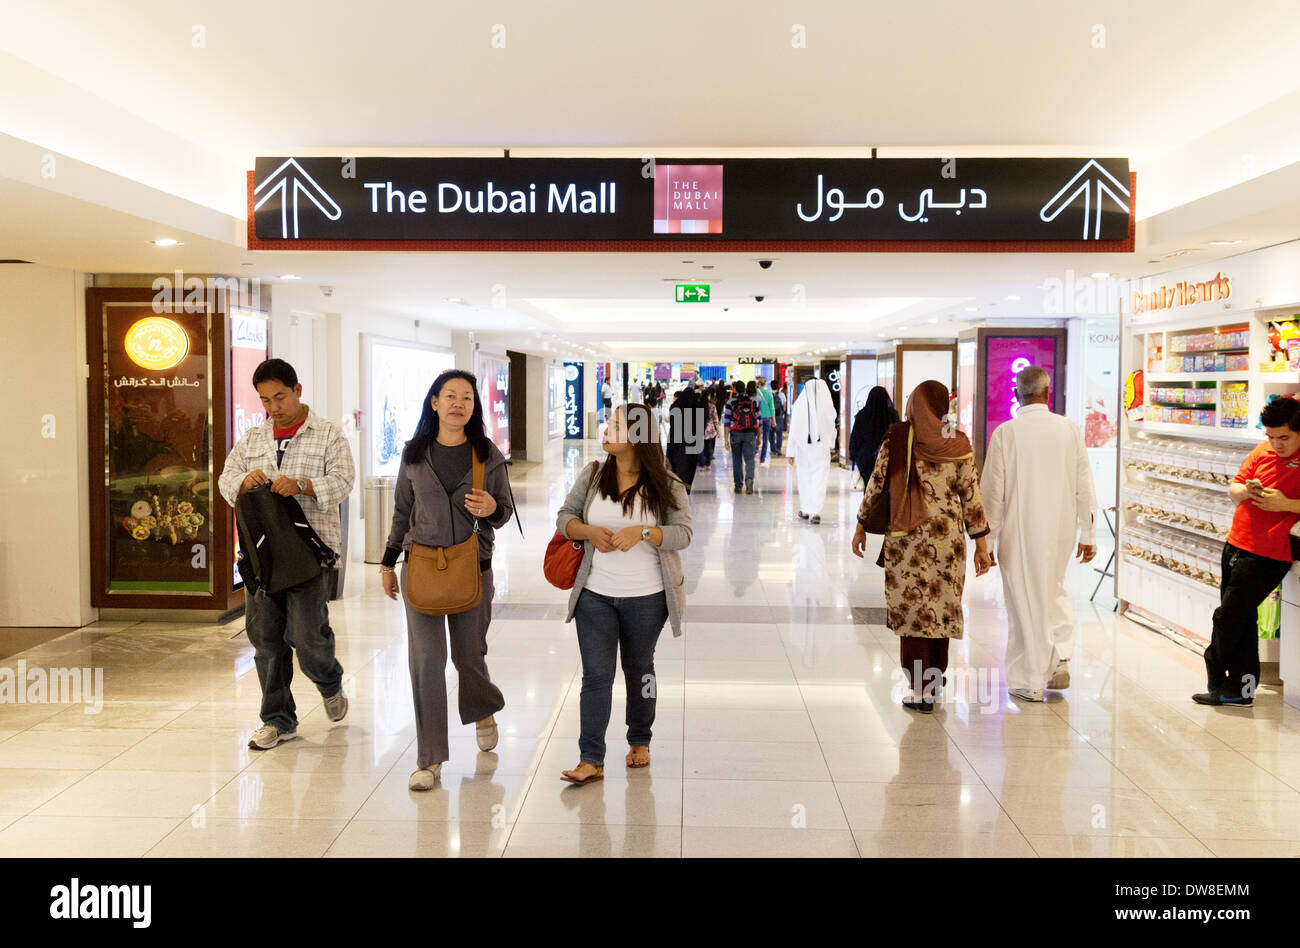 Menschen am Eingang in die Dubai Mall mit Zeichen, Dubai, Vereinigte Arabische Emirate, Vereinigte Arabische Emirate-Nahost Stockfoto